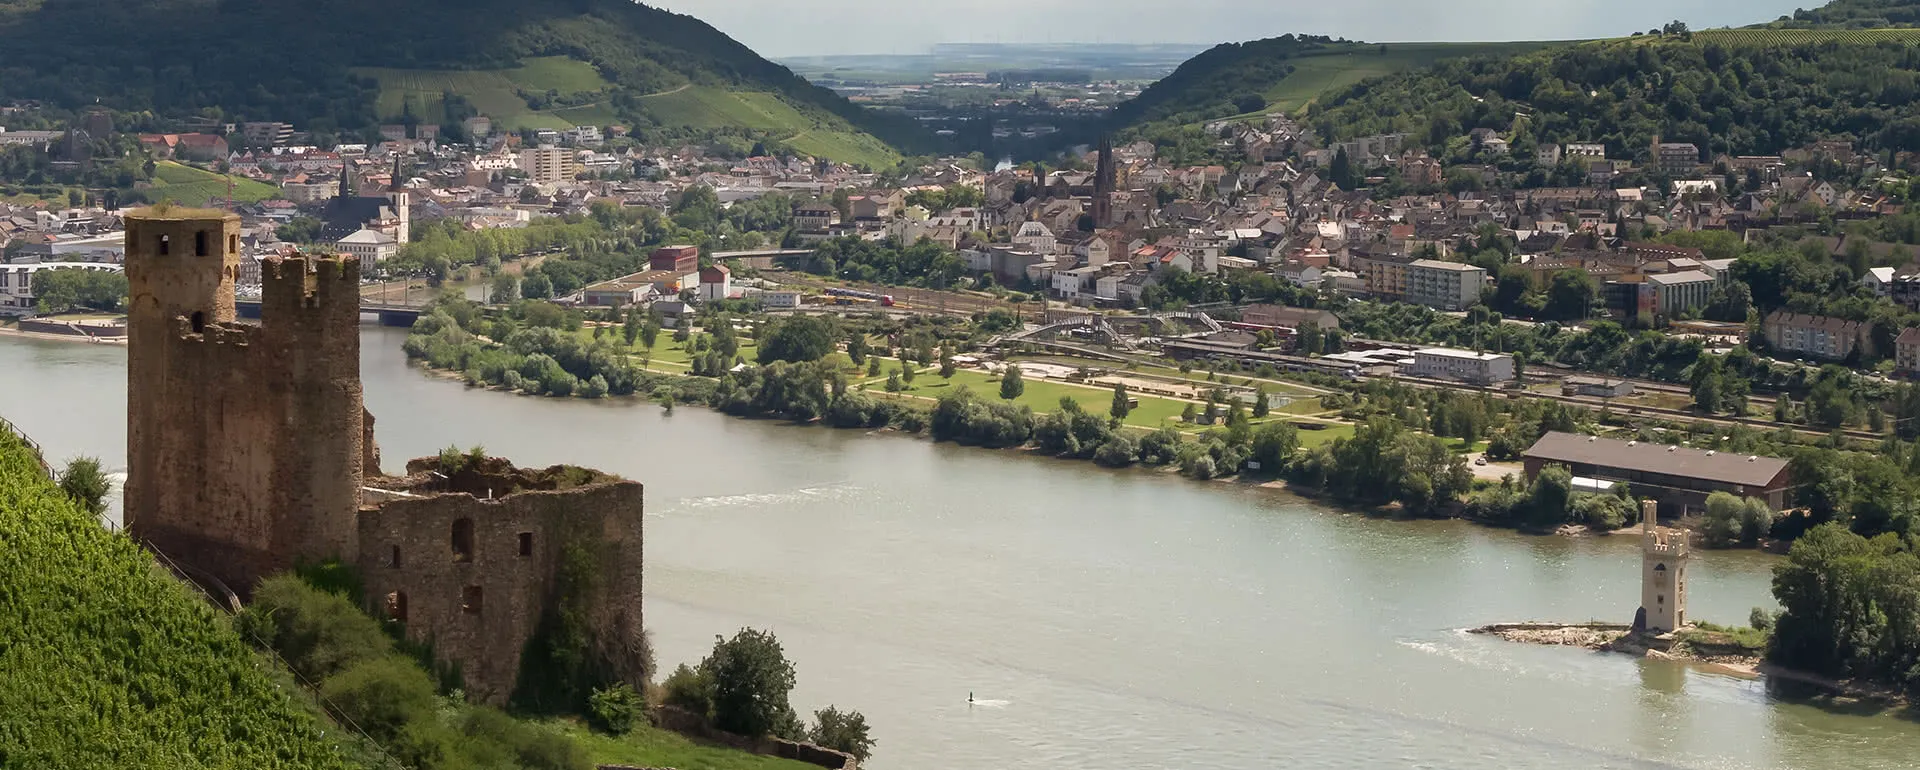 Rüdesheim am Rhein panorama image